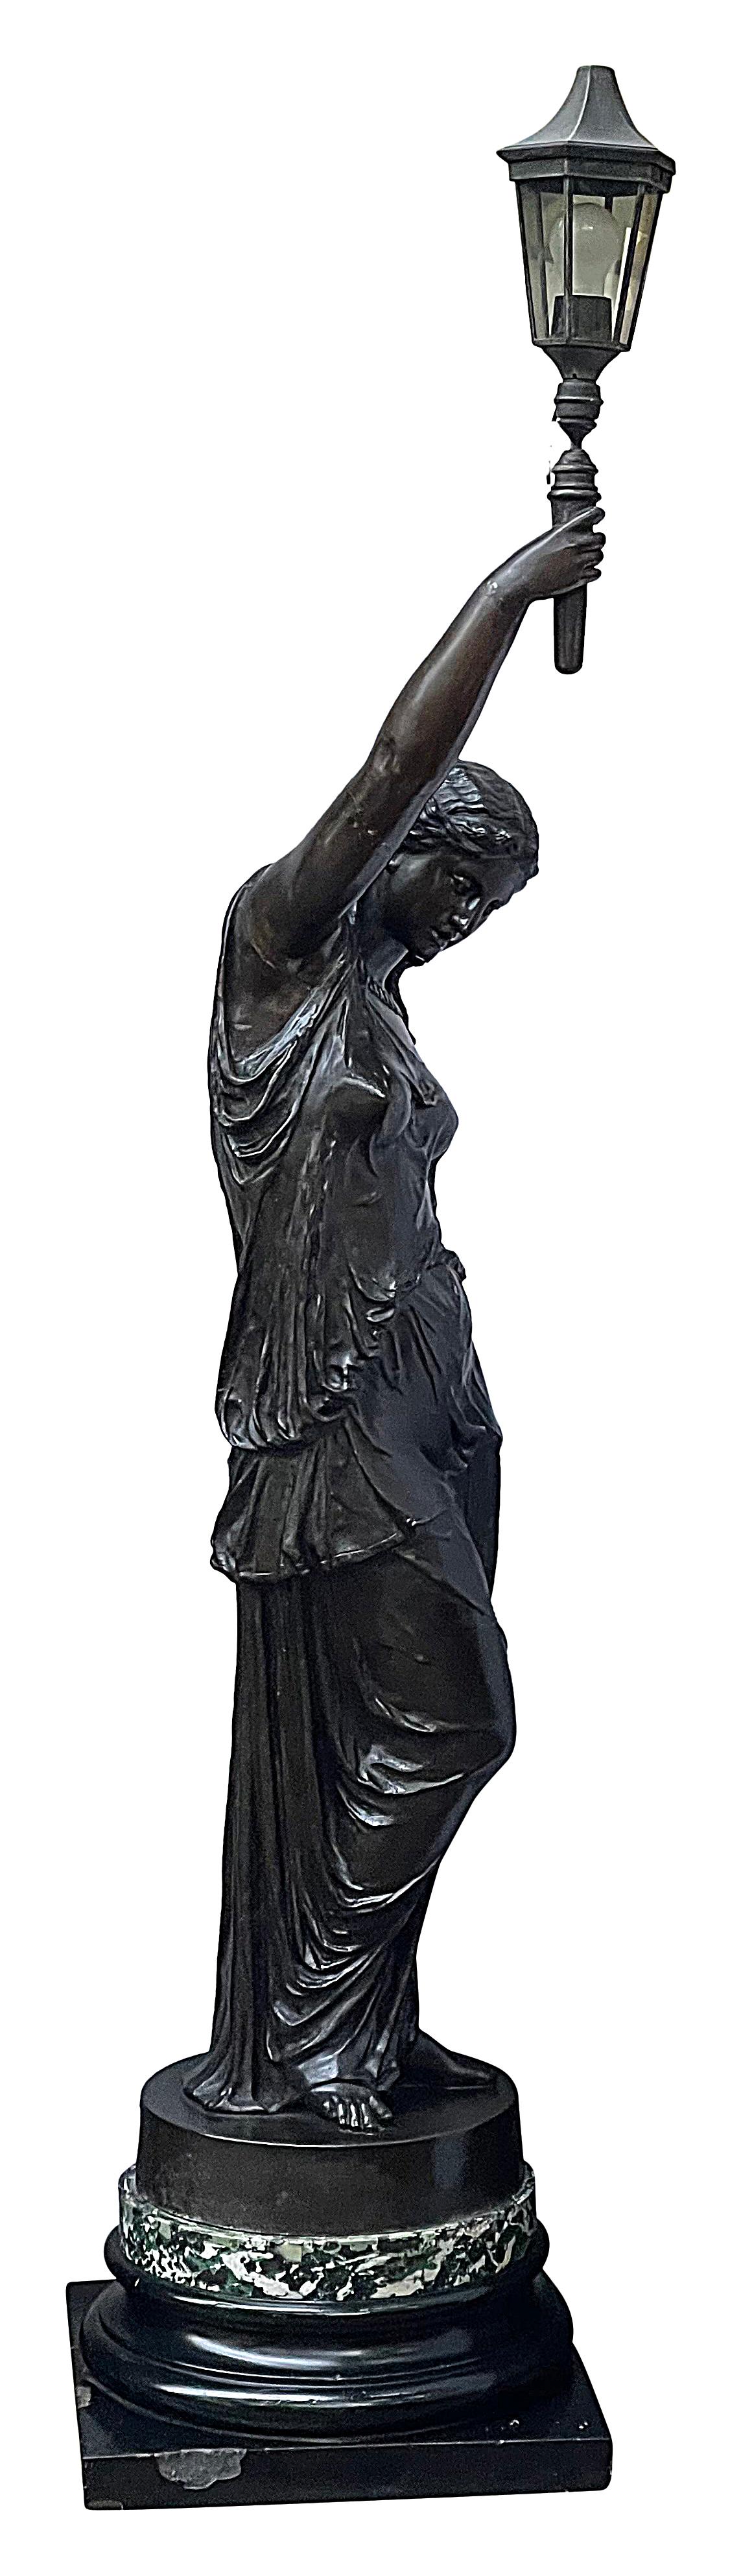 Une grande et impressionnante torche de jeune fille en bronze patiné classique du 19e siècle, montée sur un socle piédestal.
A la manière de Barbedienne.

Lot 75 SNTKZ